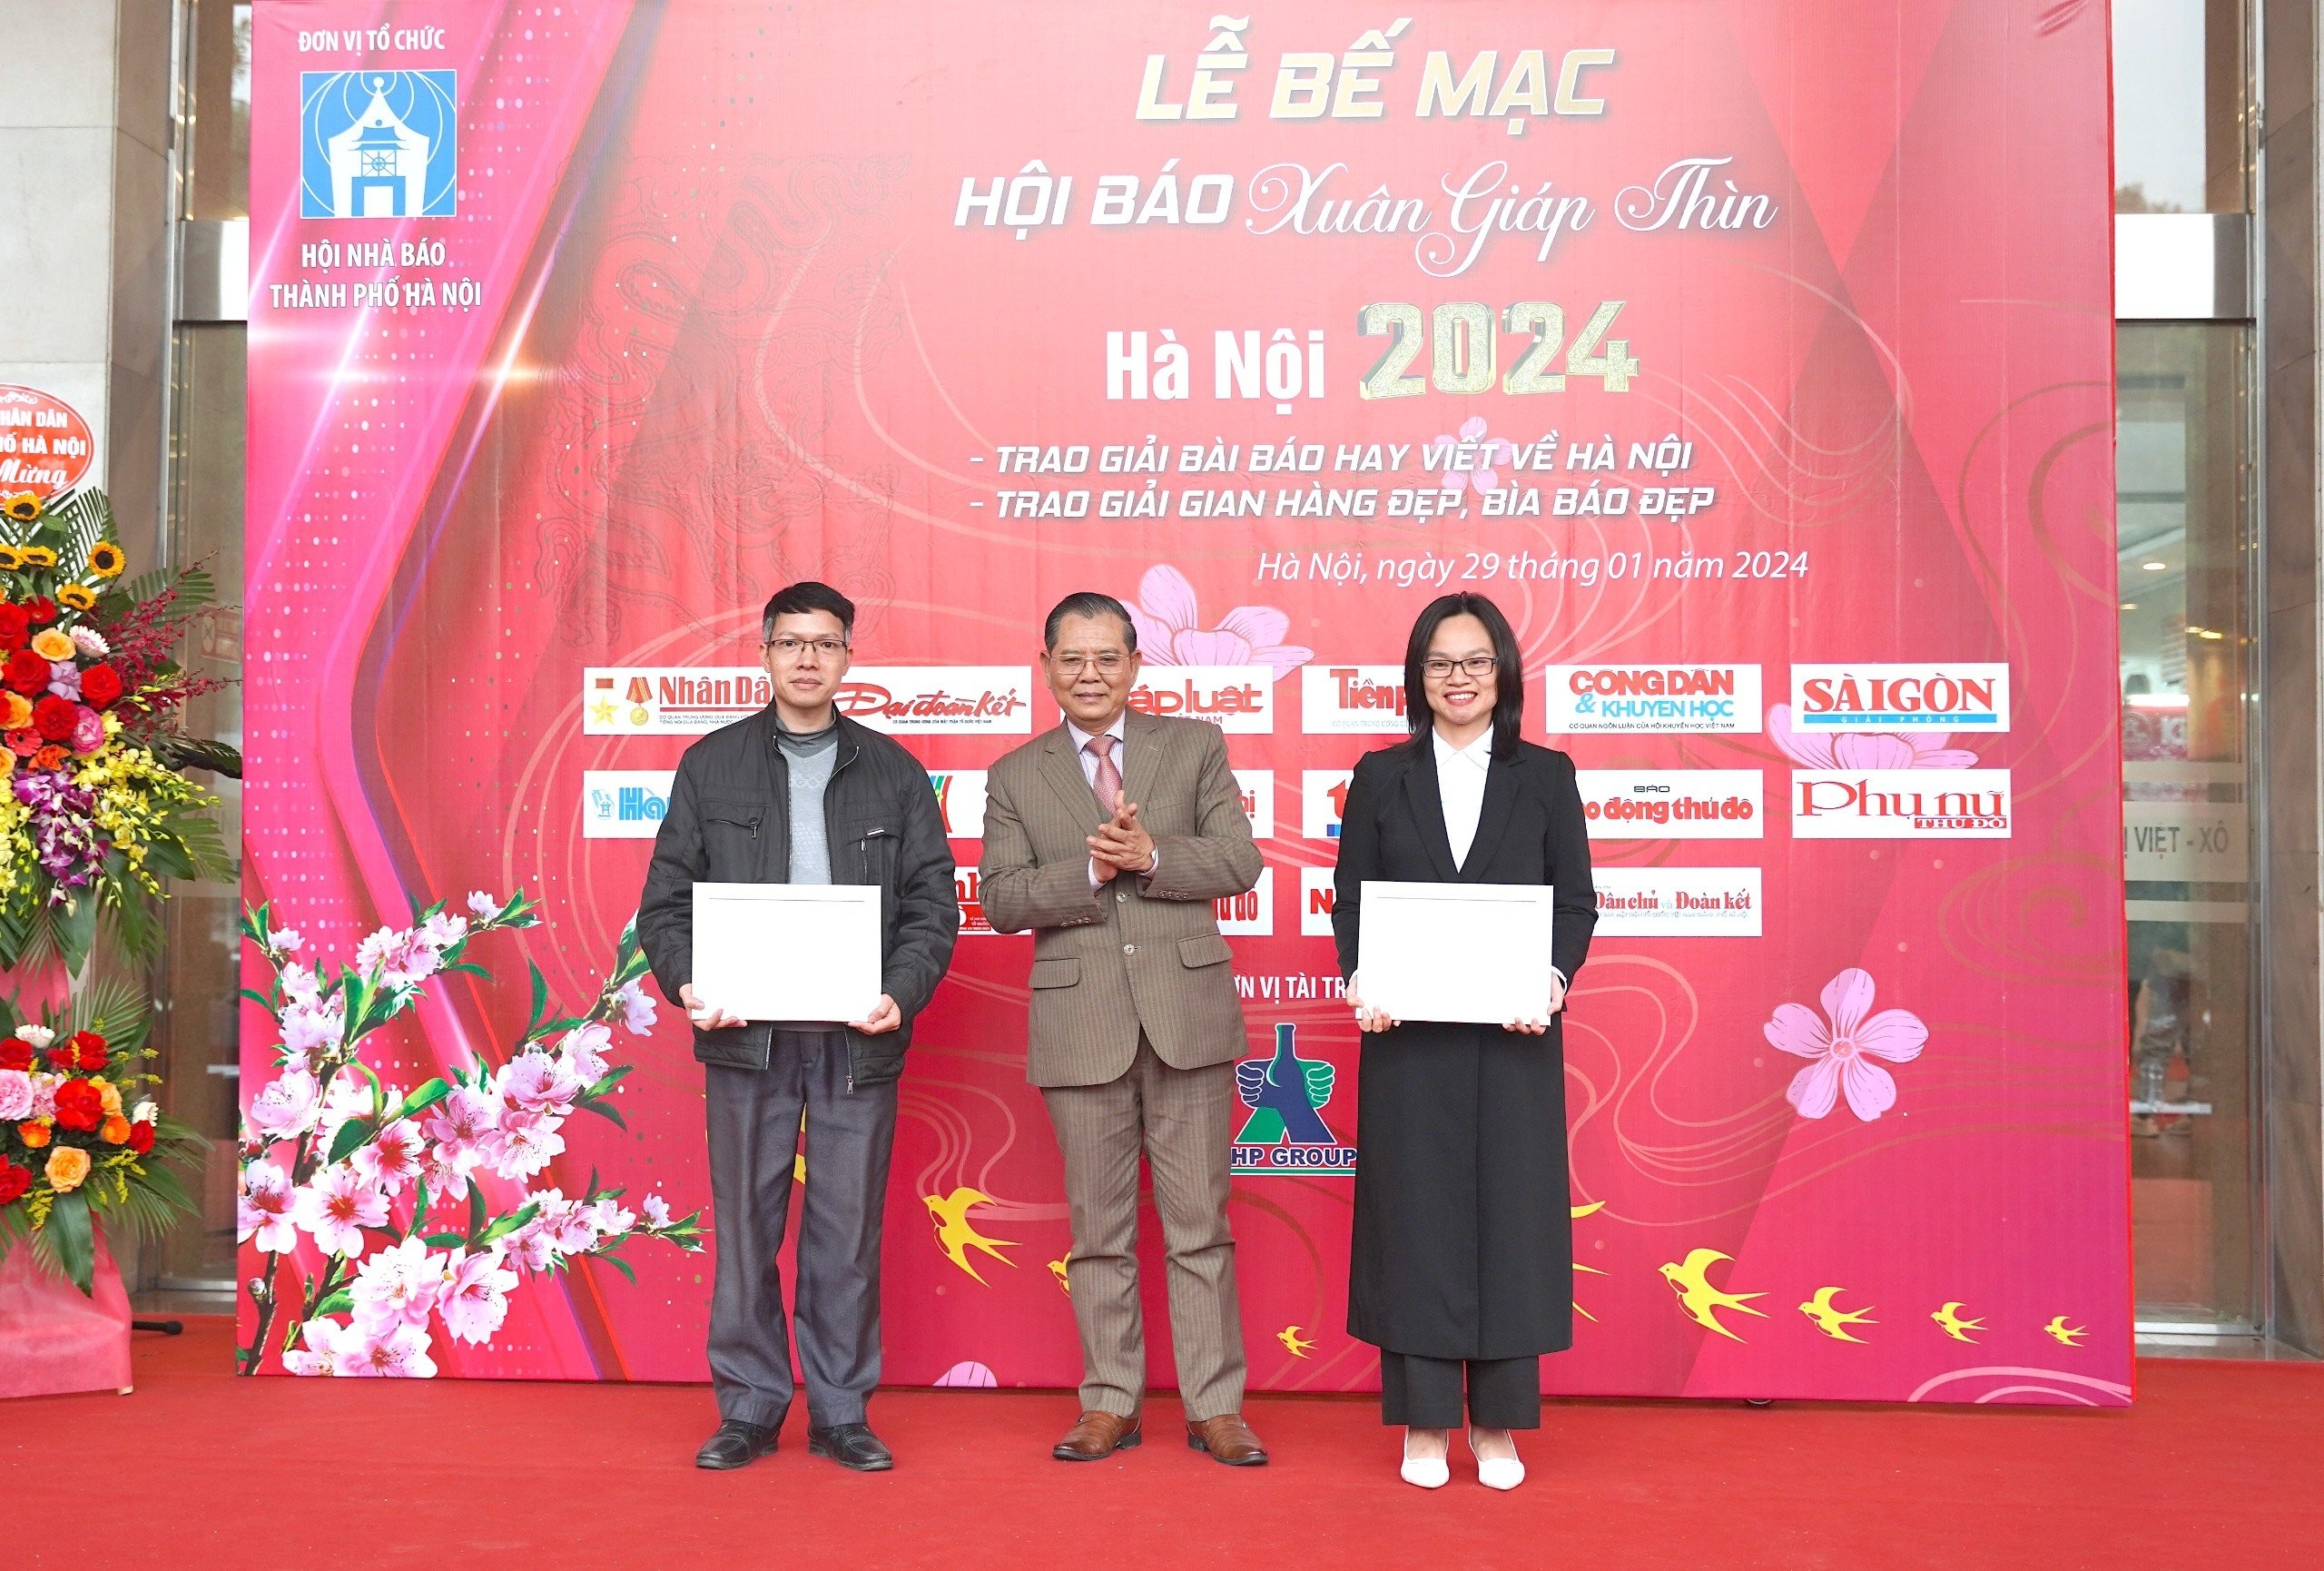 Lời cảm ơn của Hội Nhà báo thành phố Hà Nội sau Hội báo Xuân Giáp Thìn - Hà Nội 2024